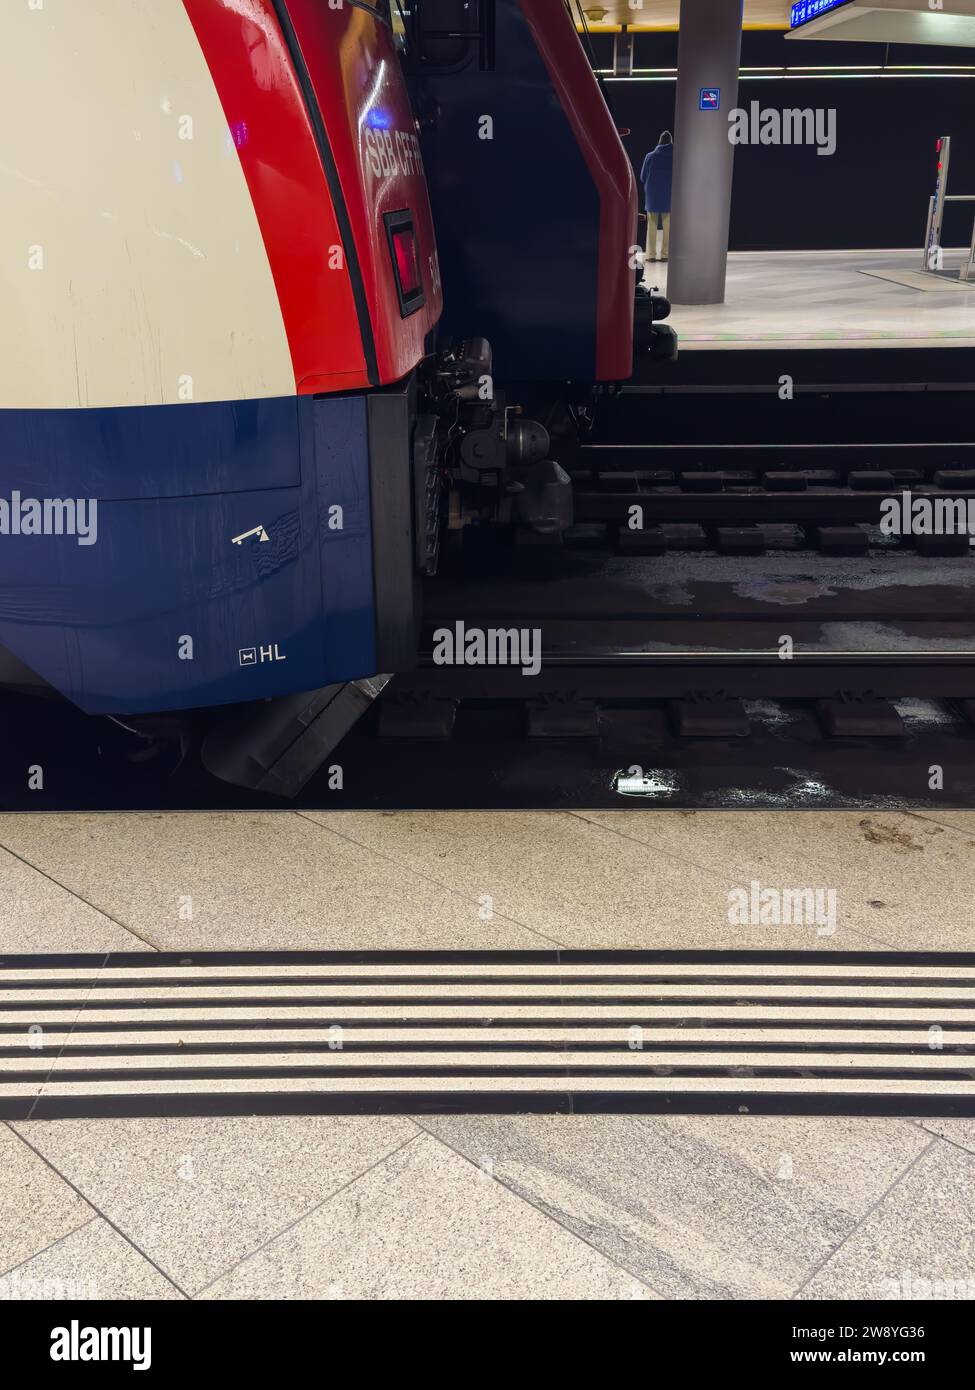 Zurigo, Svizzera - 1° dicembre 2023: Una striscia bianca sul pavimento di una piattaforma ferroviaria come aiuto di orientamento per i non vedenti Foto Stock